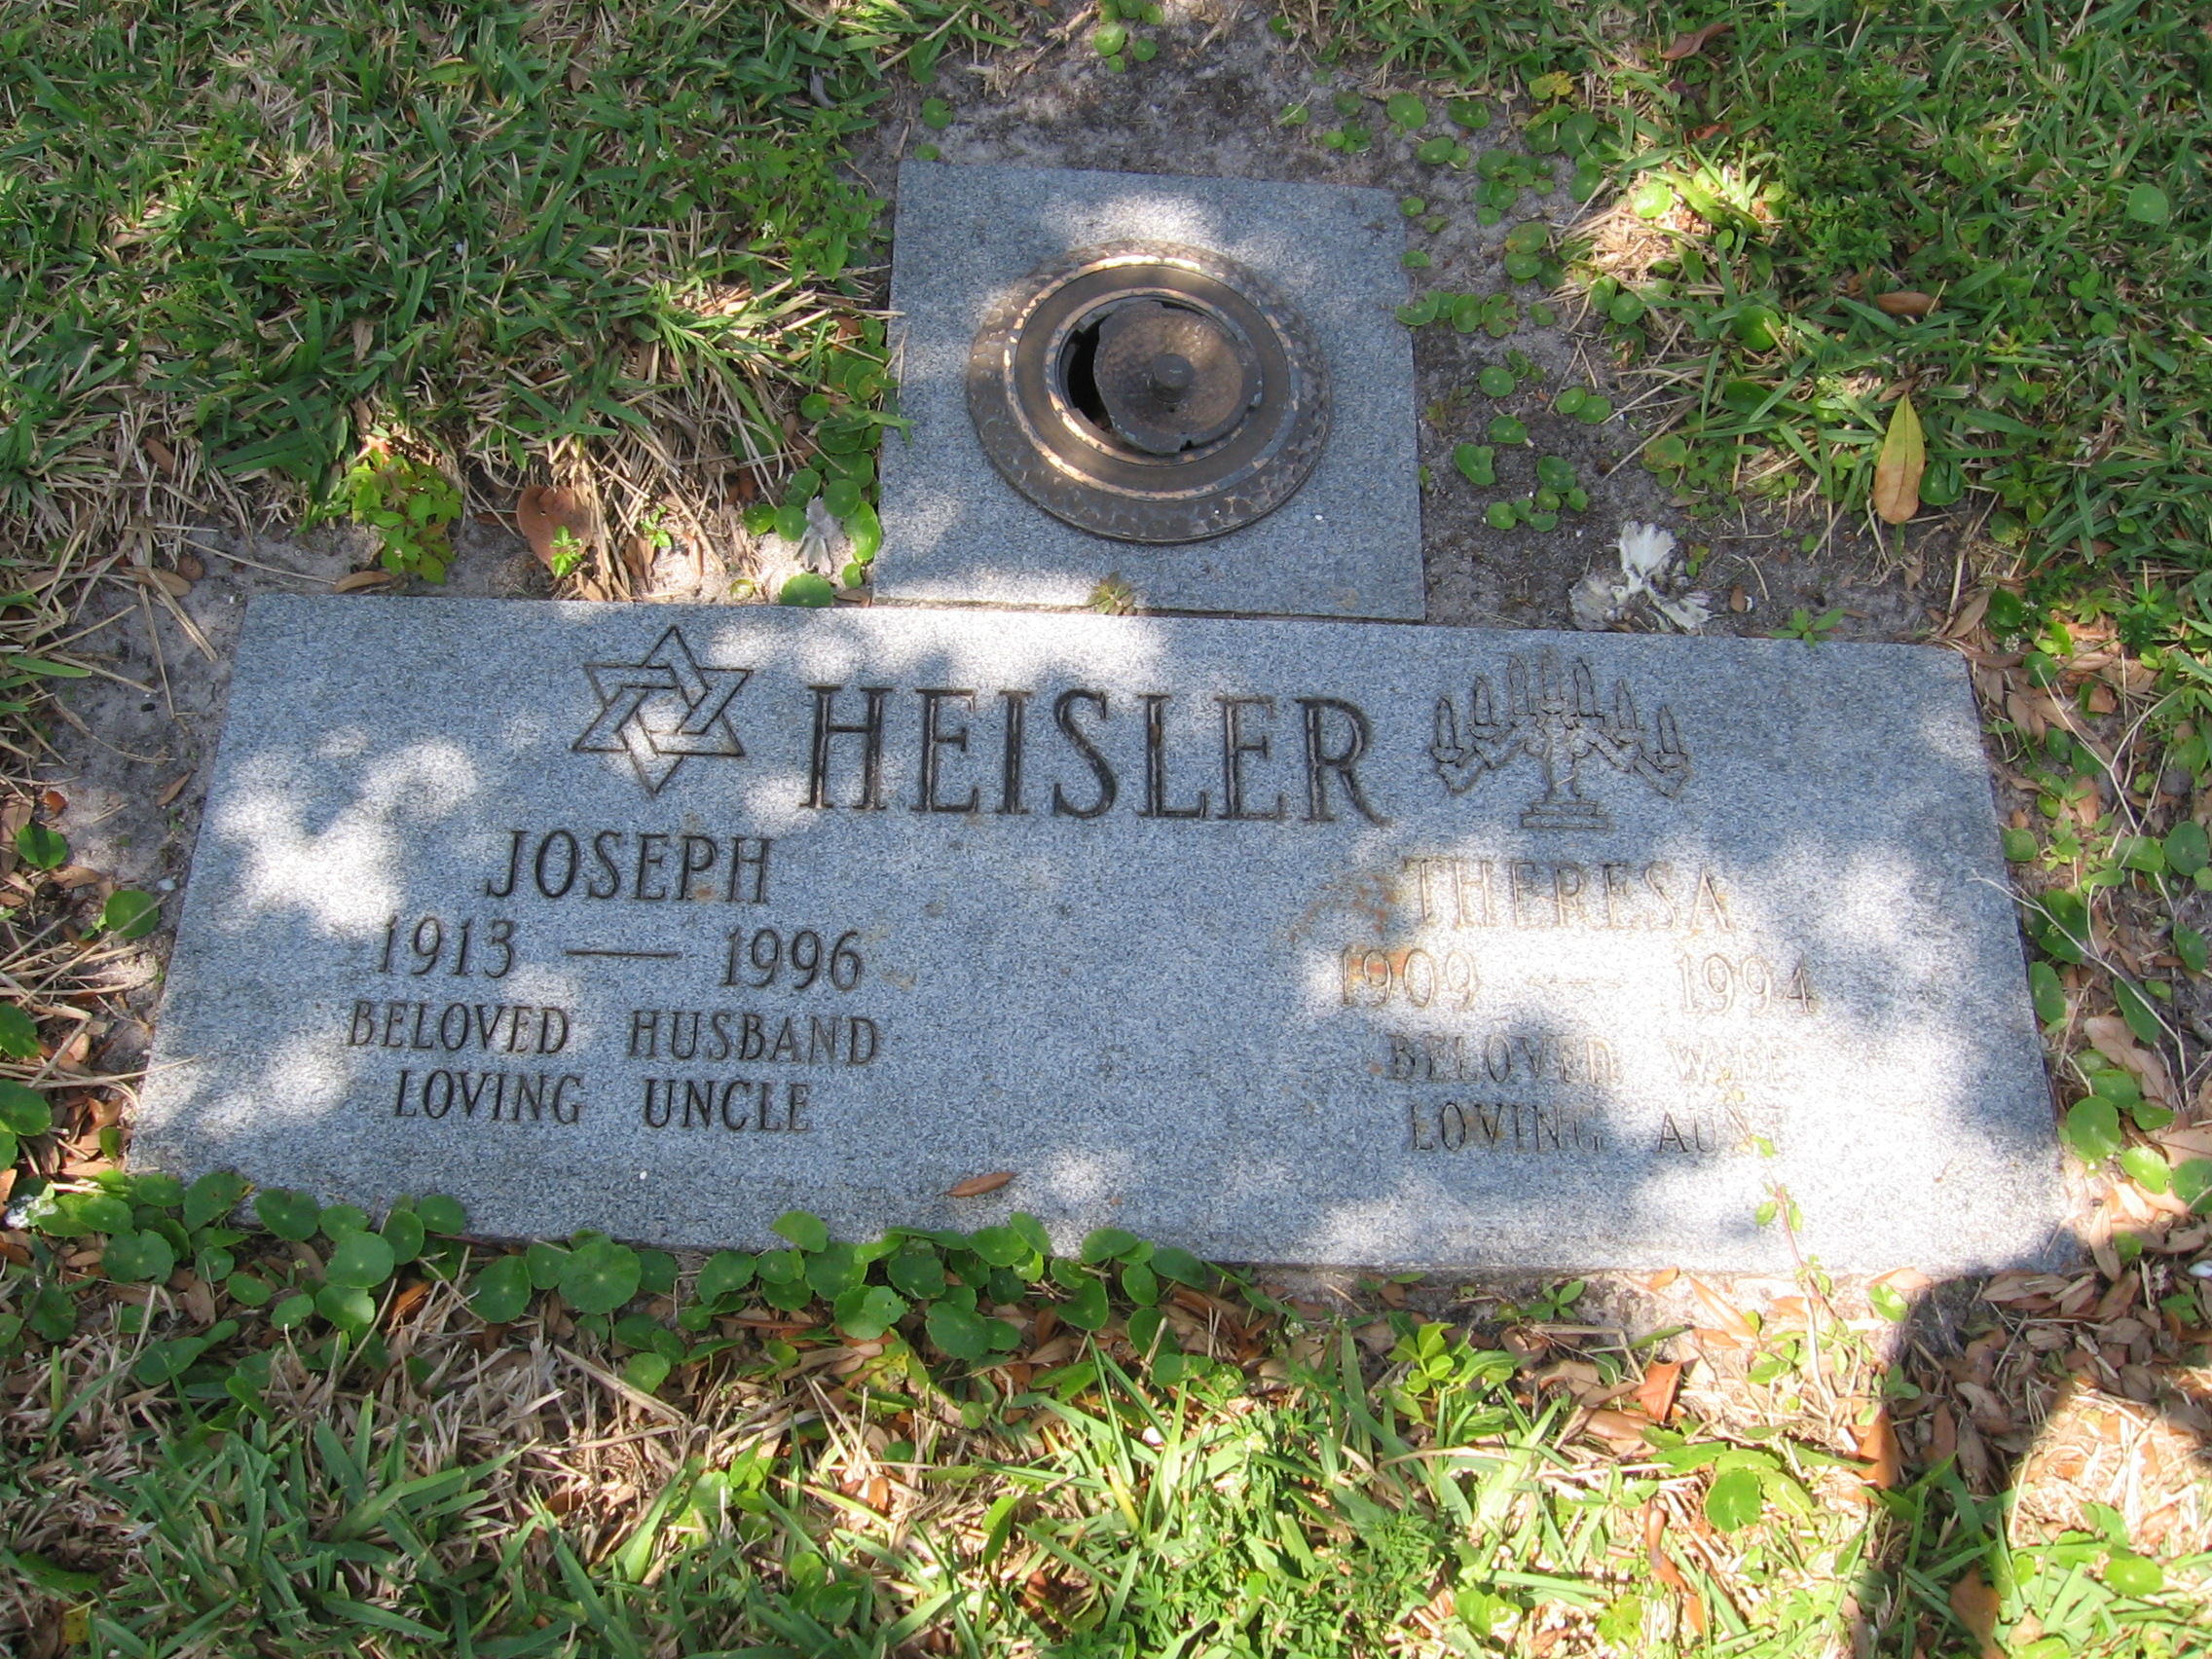 Joseph Heisler